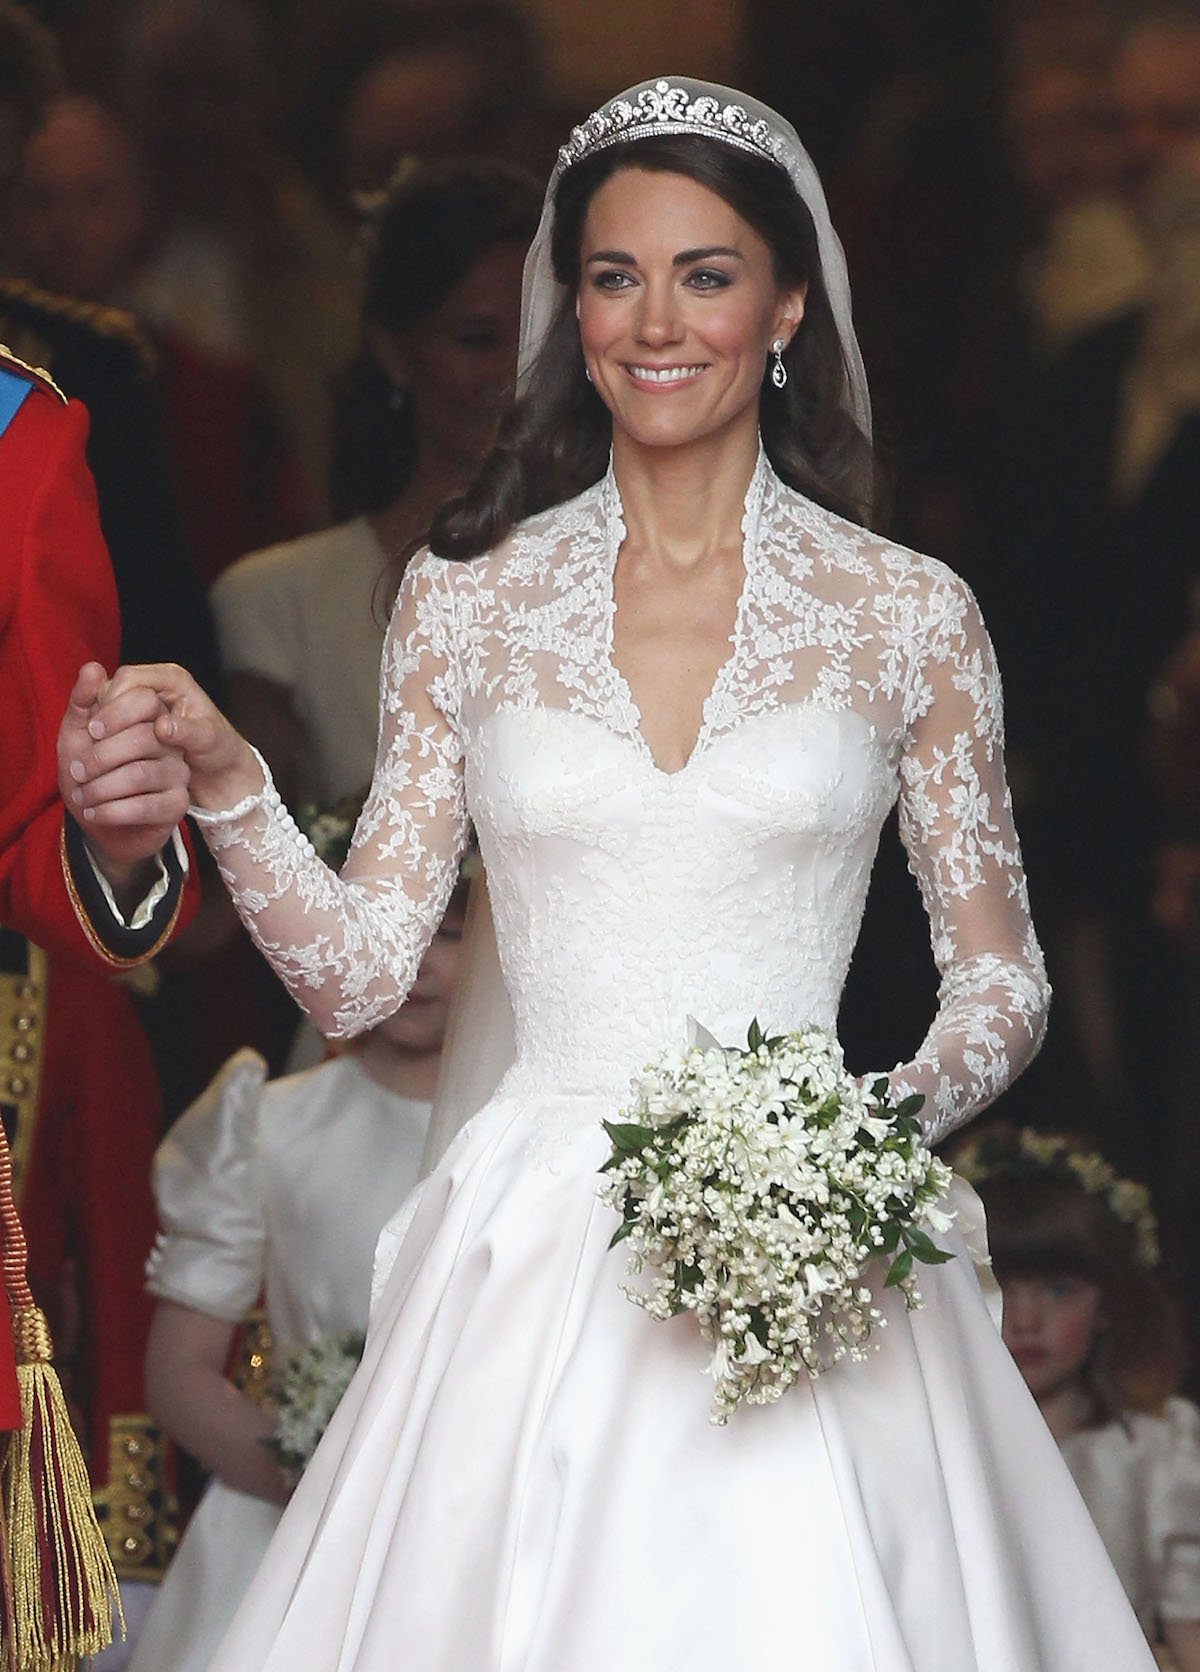 欧洲世纪婚礼上的王妃御用婚纱,你觉得谁的好看?老照片见证玄机